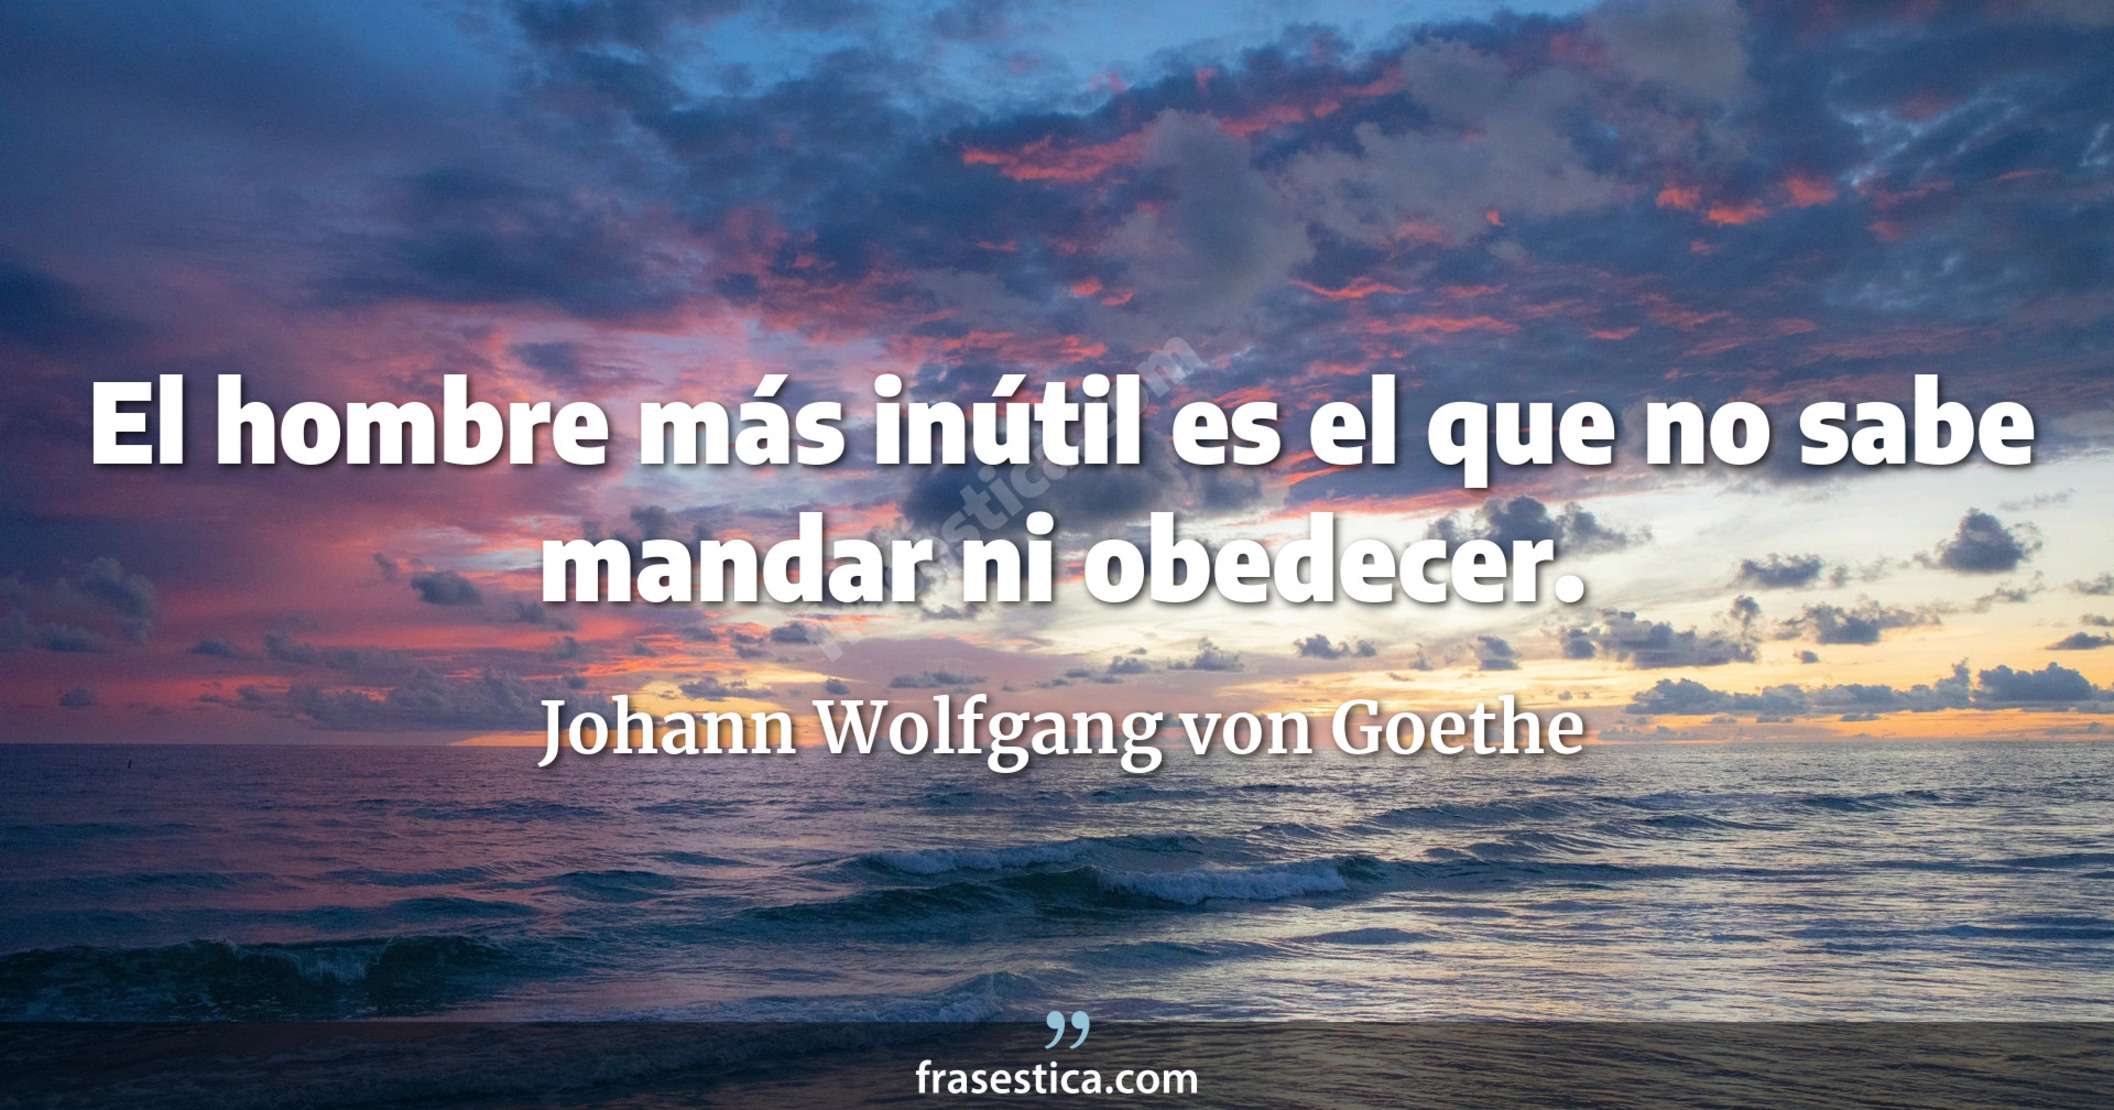 El hombre más inútil es el que no sabe mandar ni obedecer. - Johann Wolfgang von Goethe